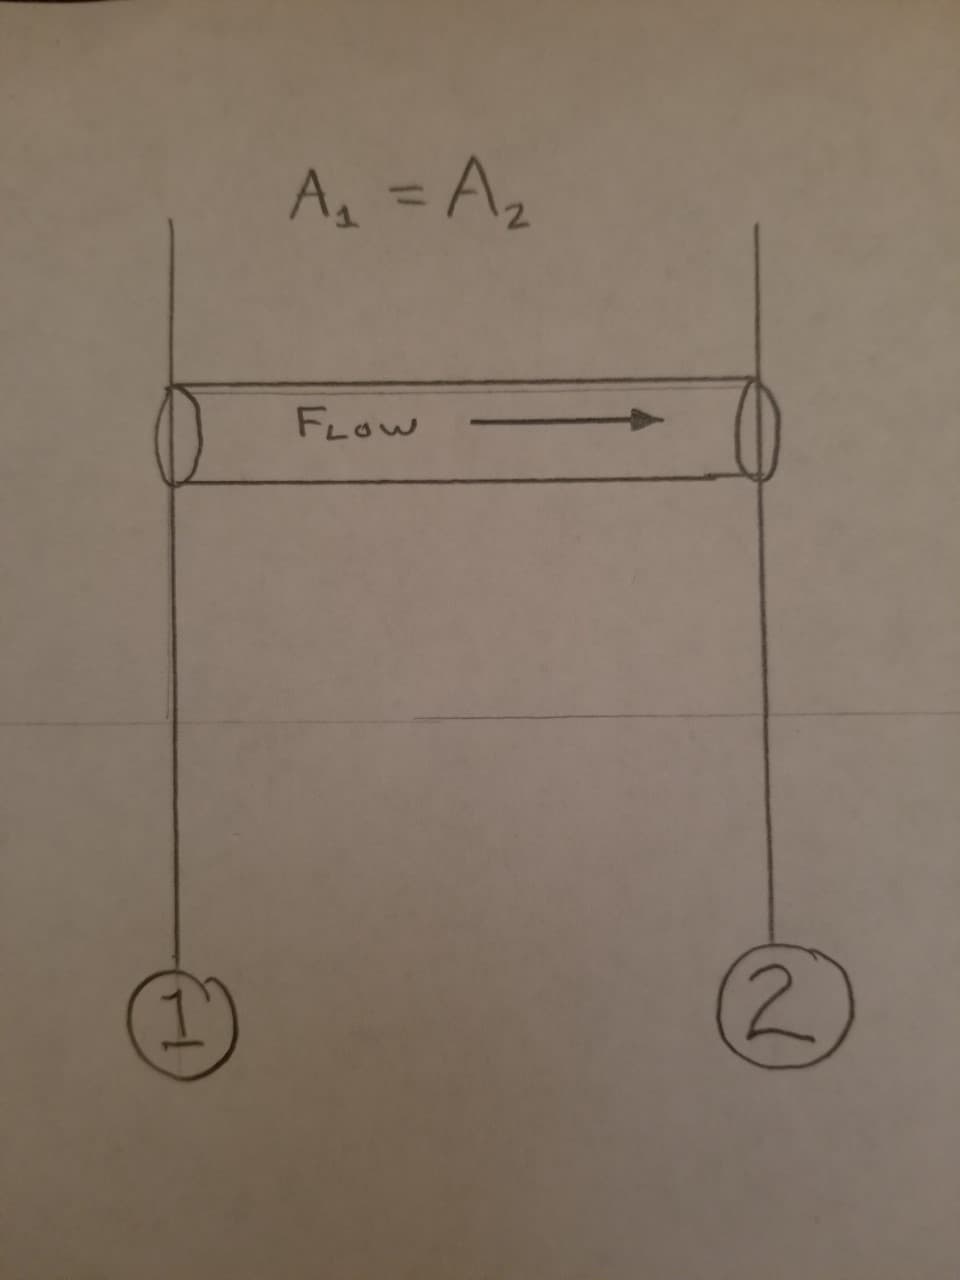 A = Az
%3D
FLOW
